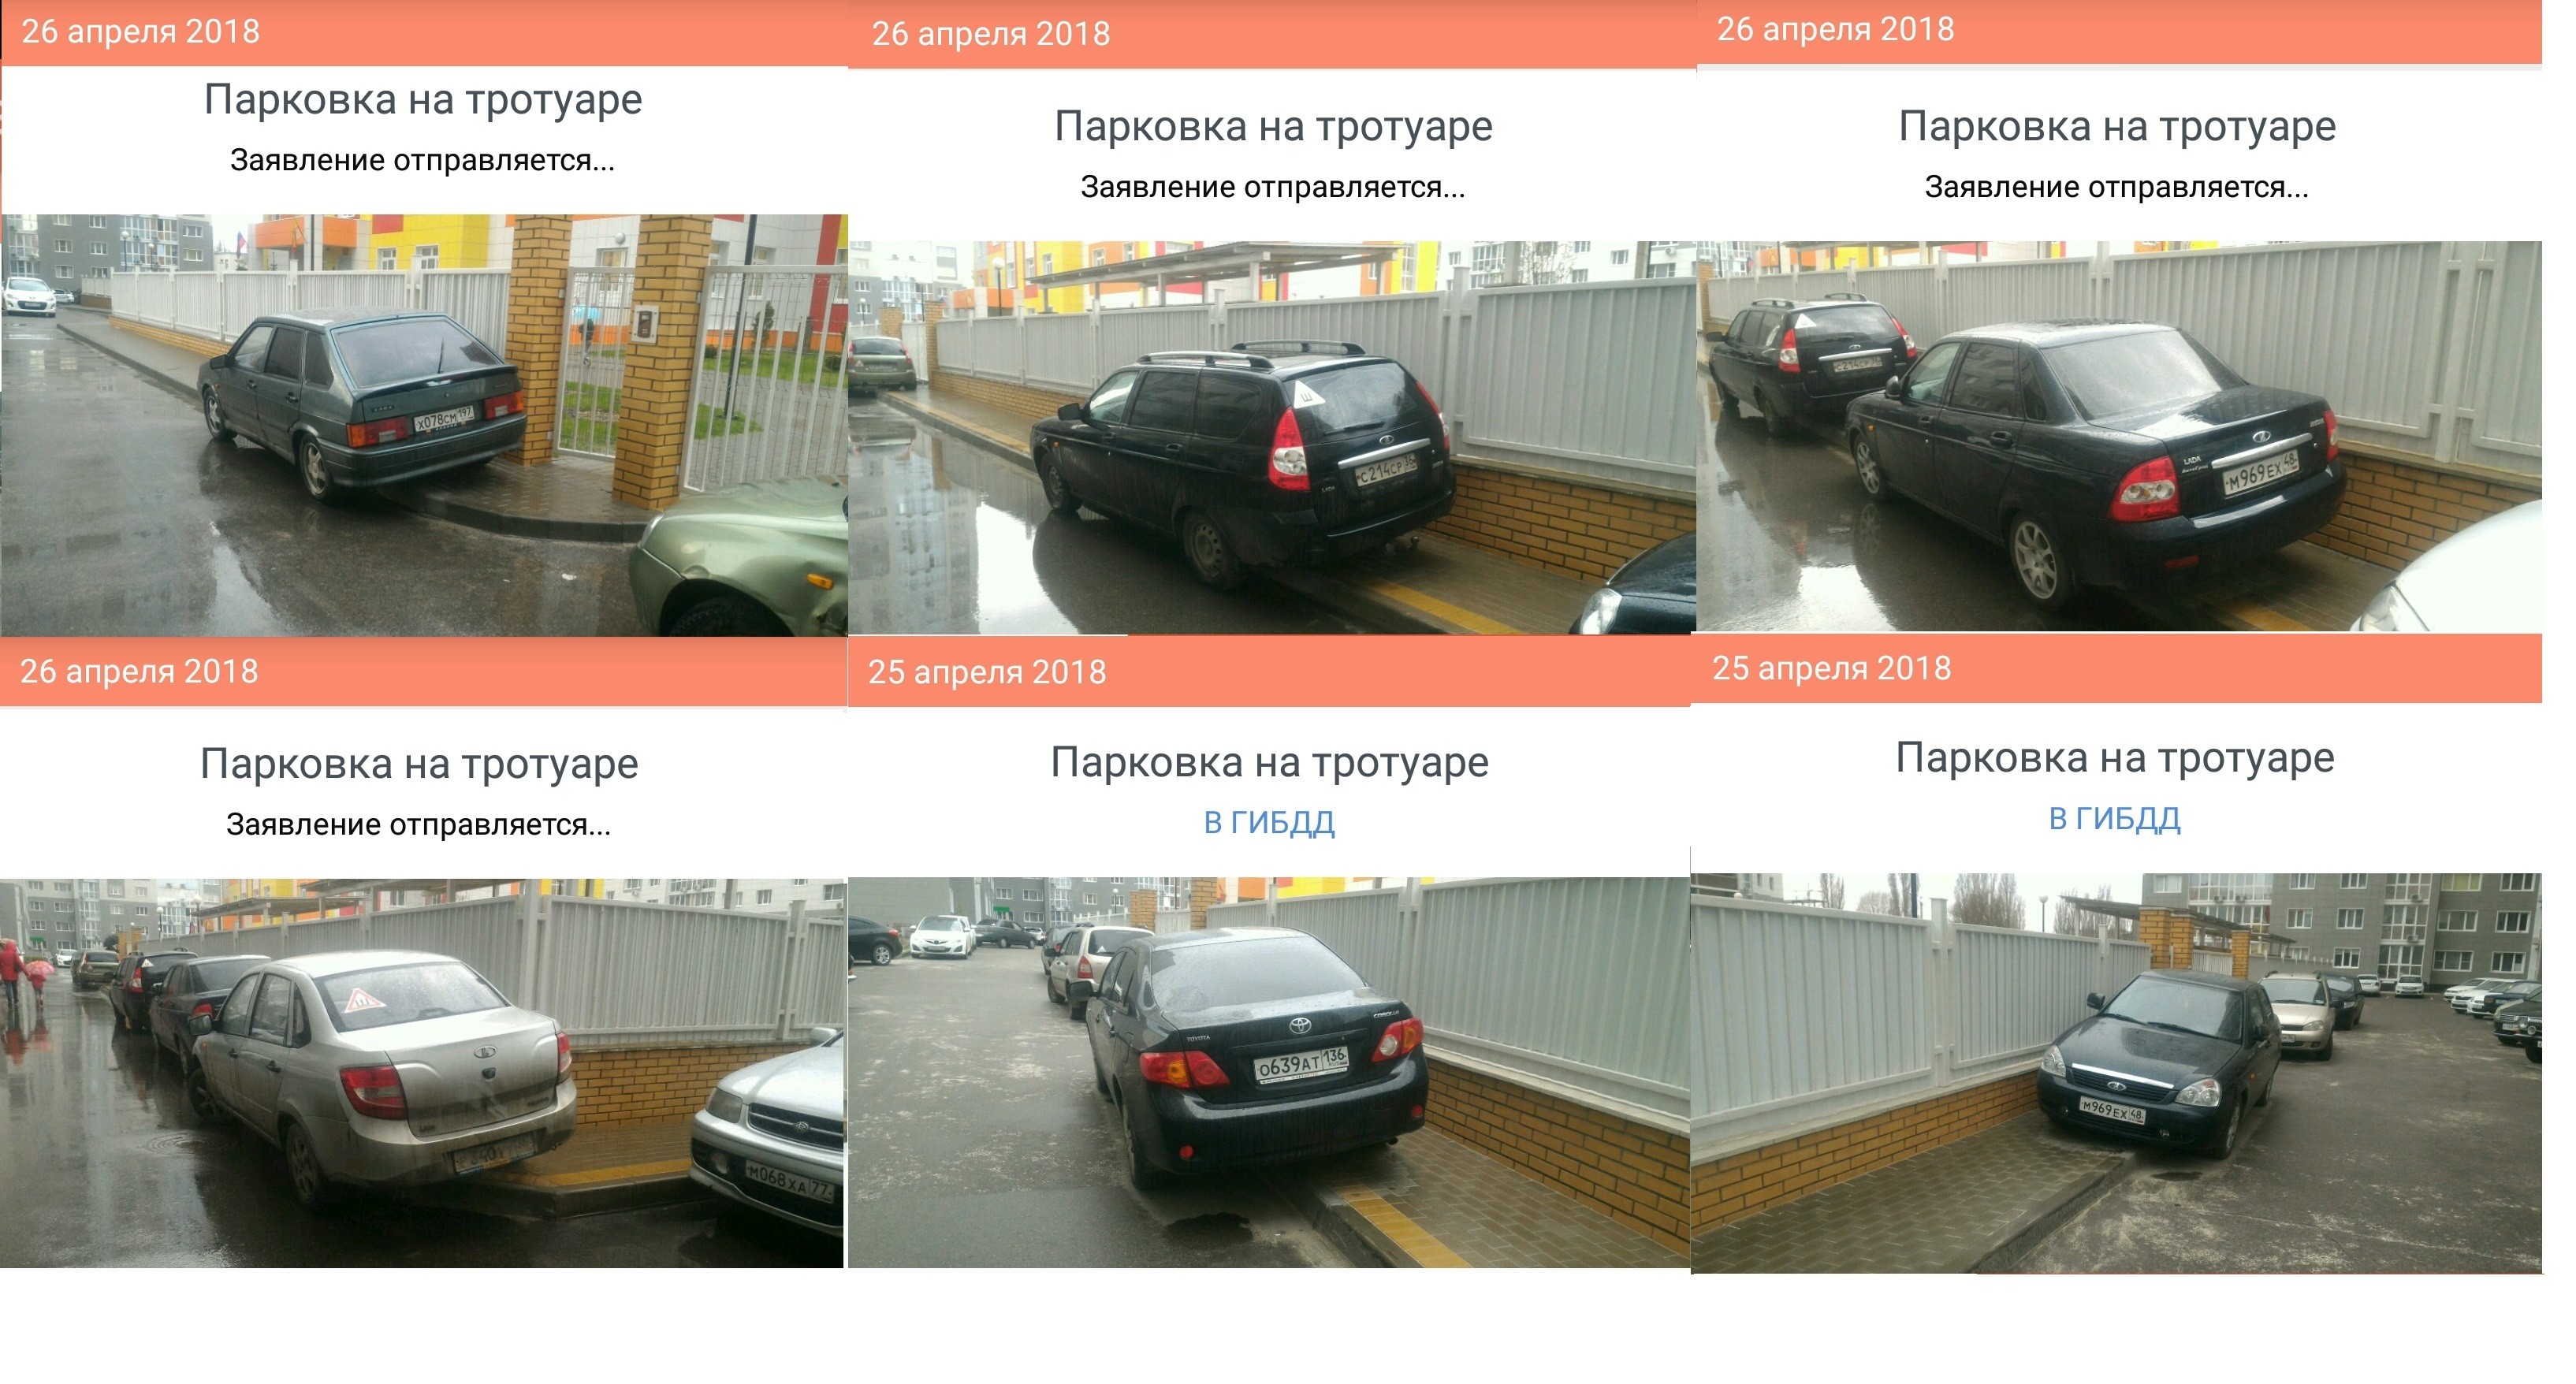 Сайт гибдд отправить фото нарушения парковки